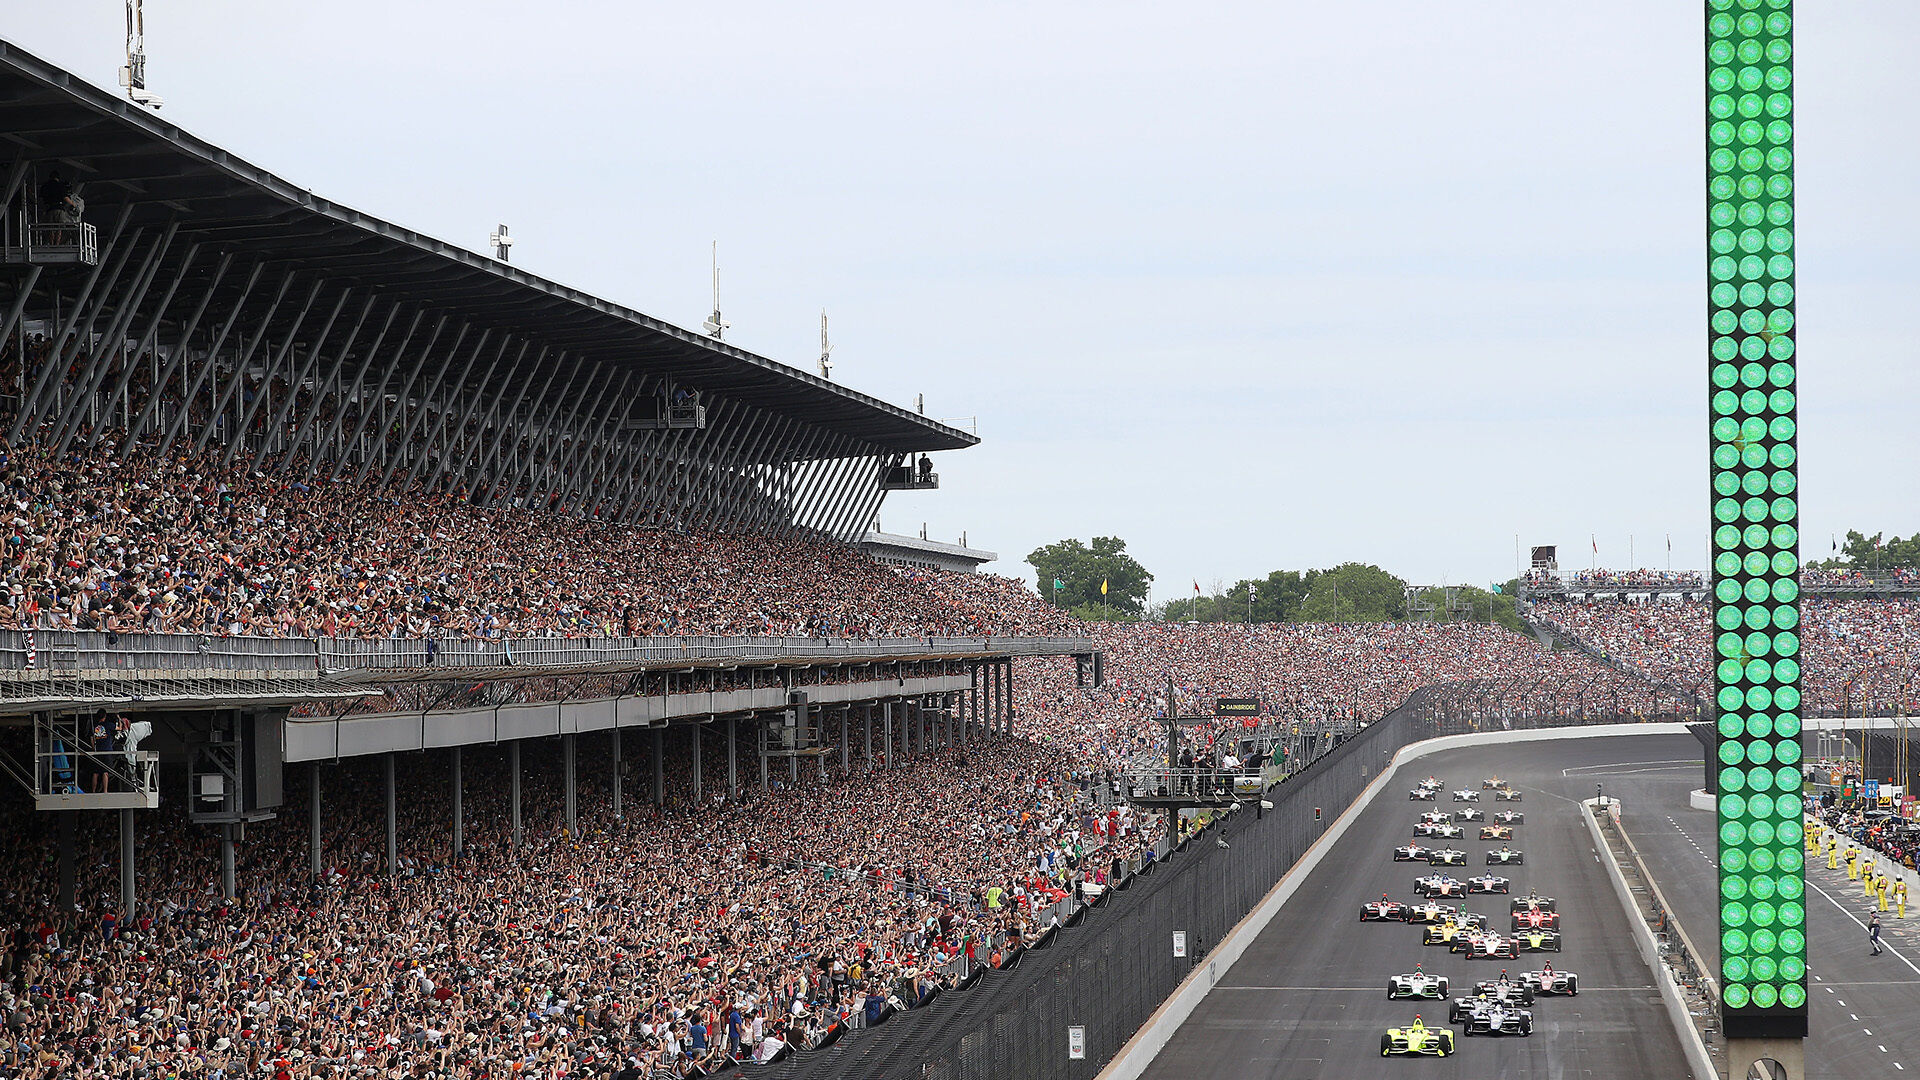 Las famosas 500 millas de Indianápolis reúnen cada año a 350.000 espectadores en el mítico óvalo Indianapolis Motor Speedway. Se habla de un récord de 400.000 aficionados sin precisar el año. Ni la Fórmula 1 puede competir con eso.